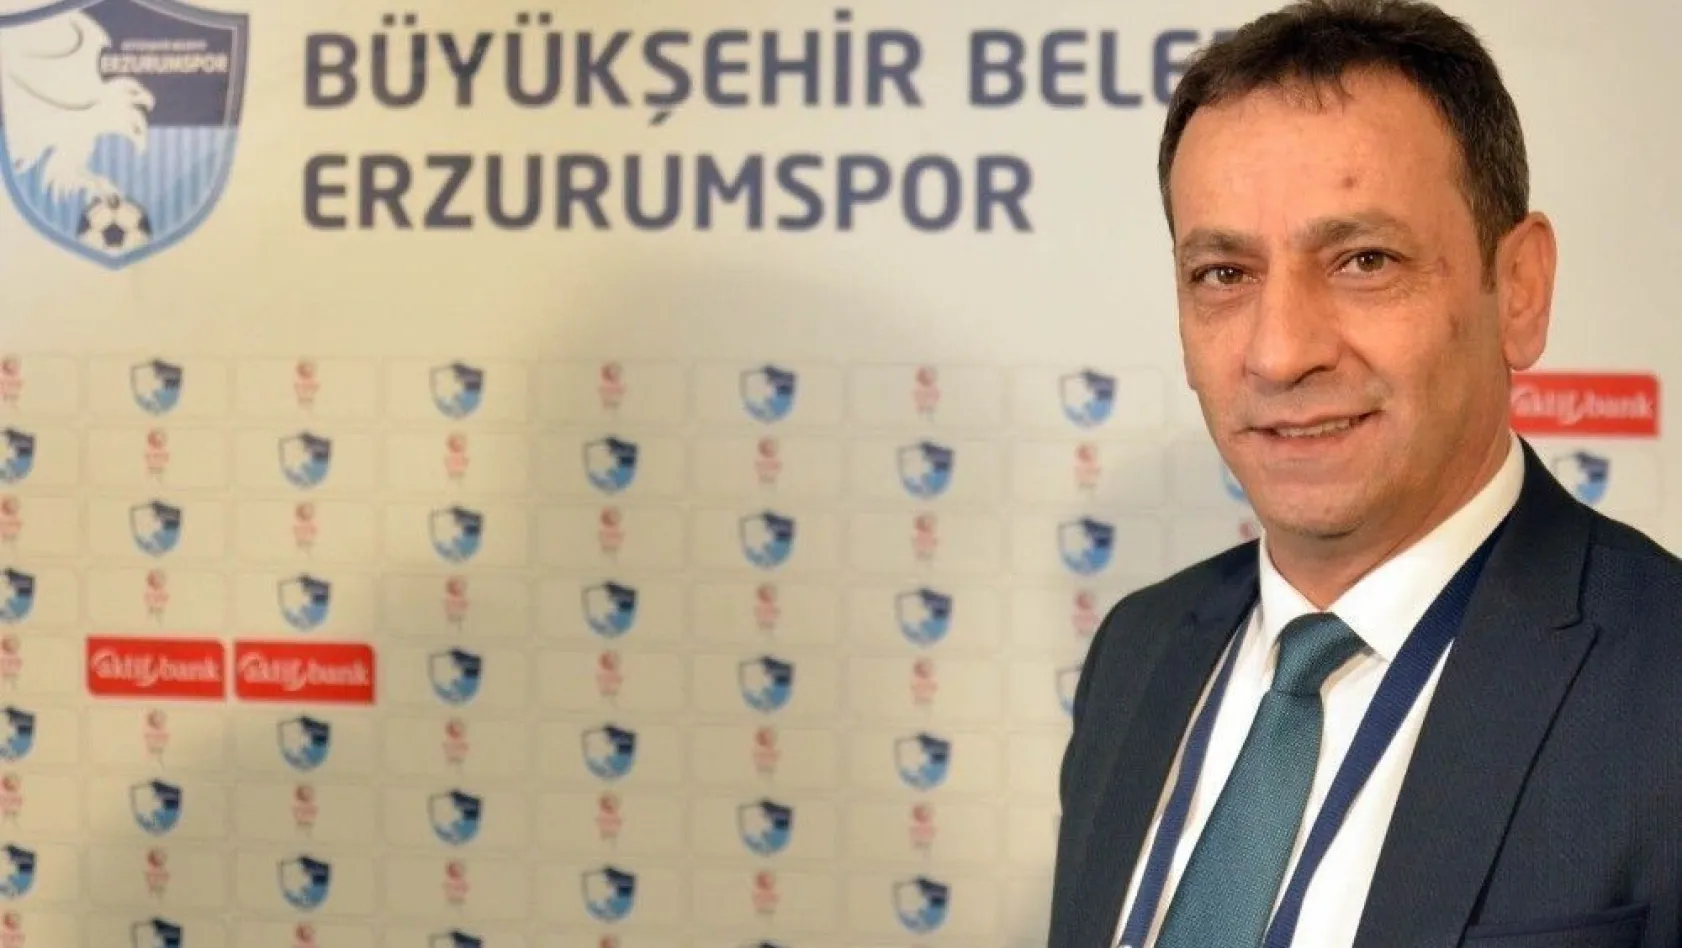 B. B. Erzurumspor Basın Sözcüsü Barlak: '17 yıllık hasret 19 Mayıs'ta bitecek'
